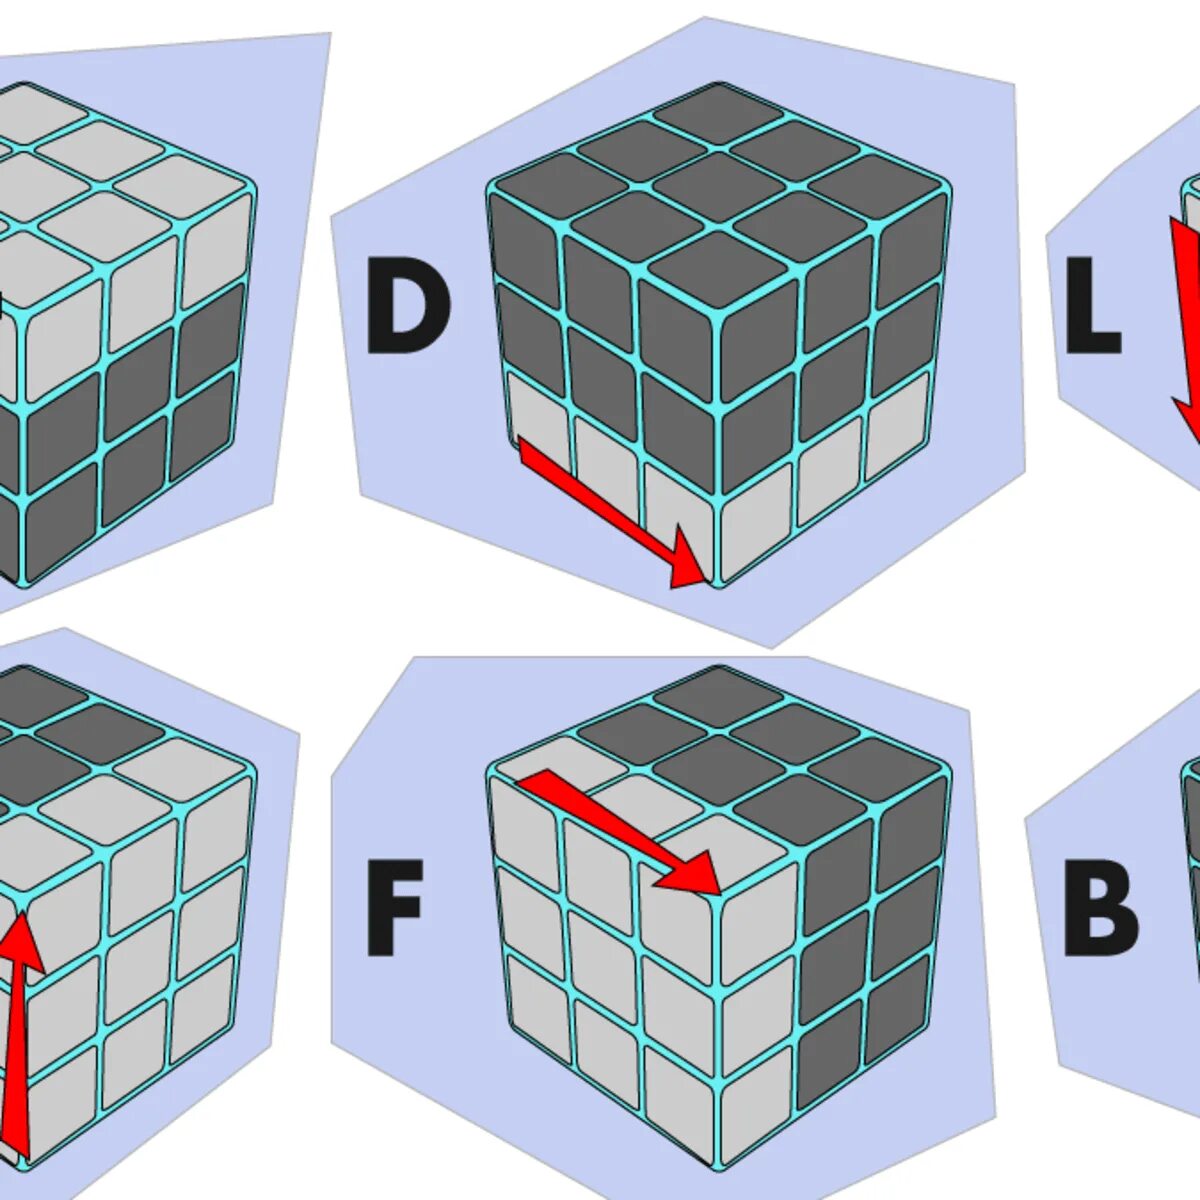 Cube solve. Алгоритм кубика Рубика 3х3. Стороны кубика Рубика 3х3. Формула кубика Рубика 3x3. Formula Kubik кубик рубик 3х3.